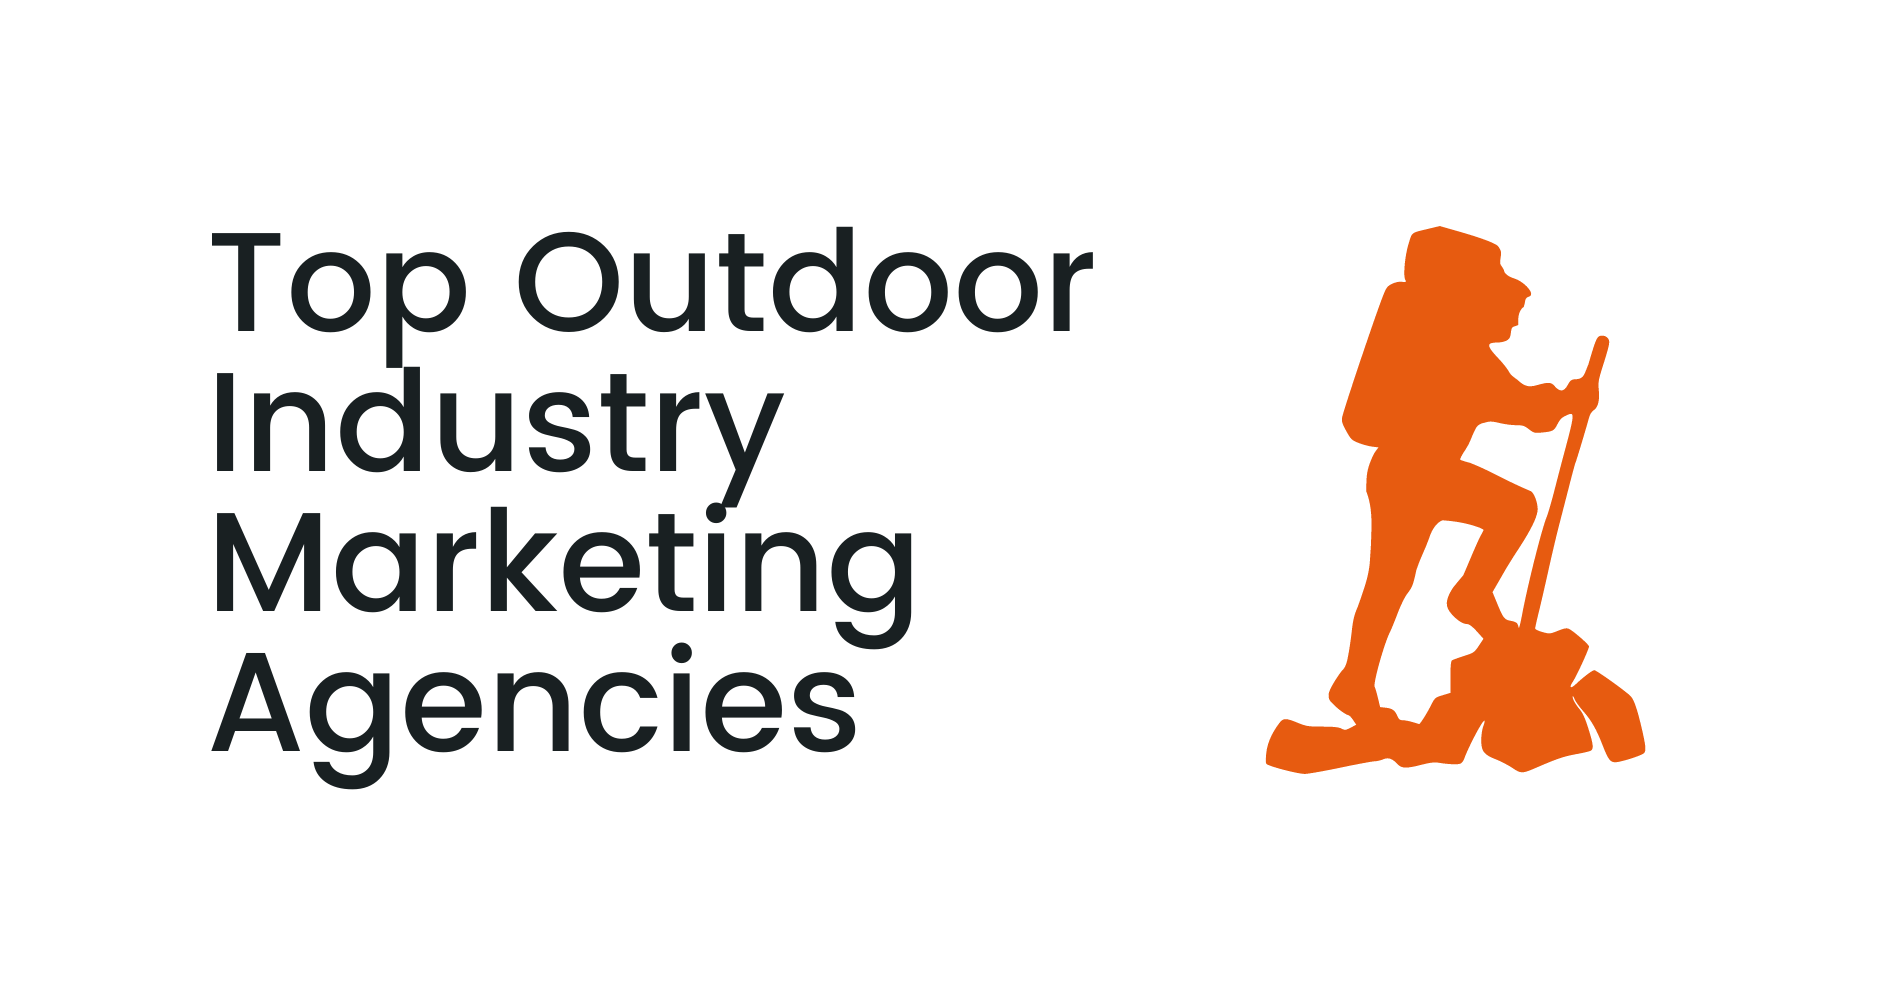 Top Outdoor Industry Marketing Agencies